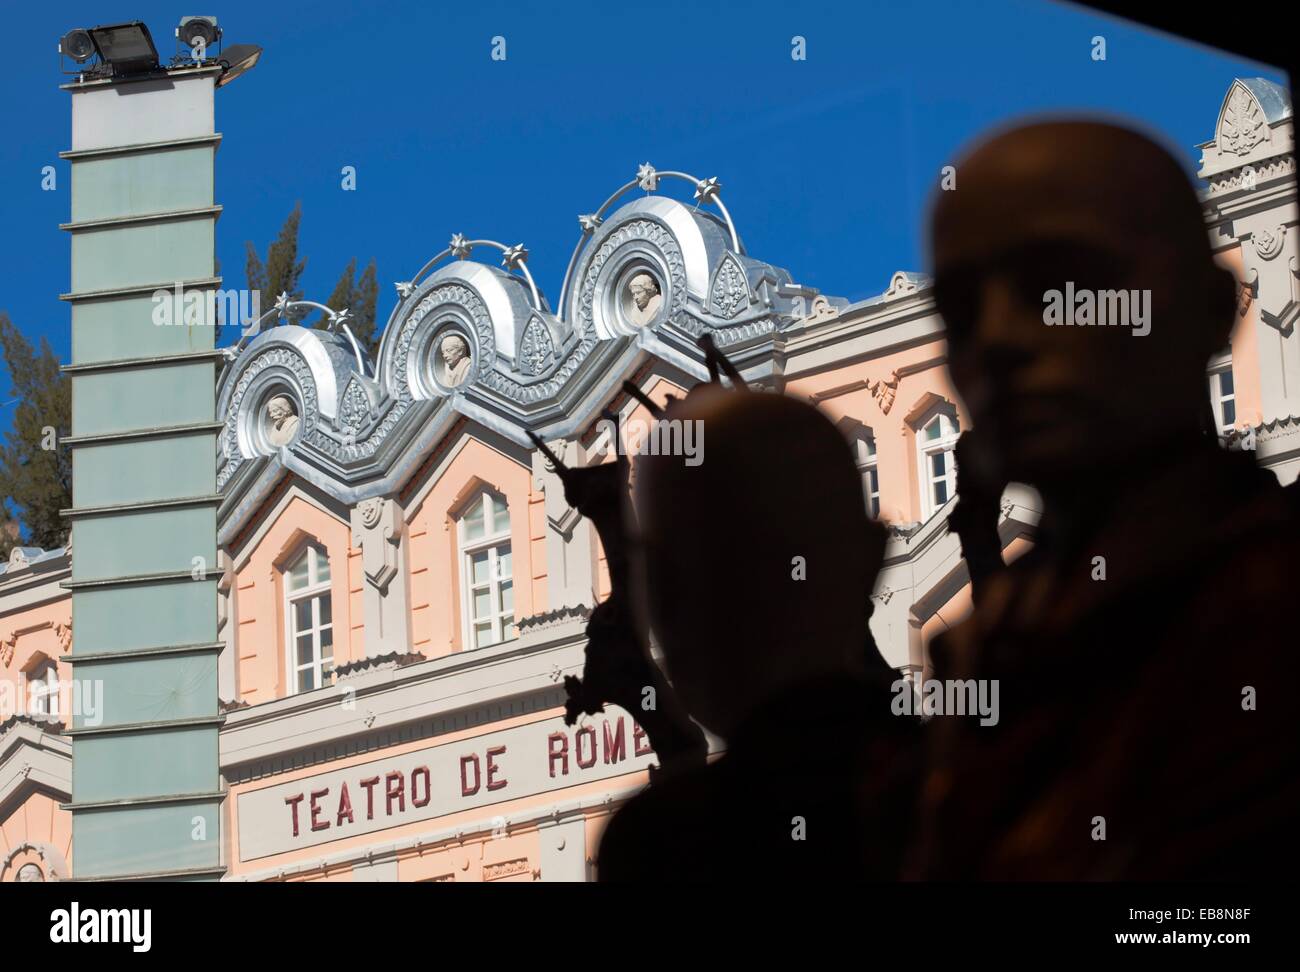 Maniquíes en la tienda, al fondo Teatro Romea, Plaza de Julián Romea,  ciudad de Murcia, España, el Sudeste de Europa Fotografía de stock - Alamy